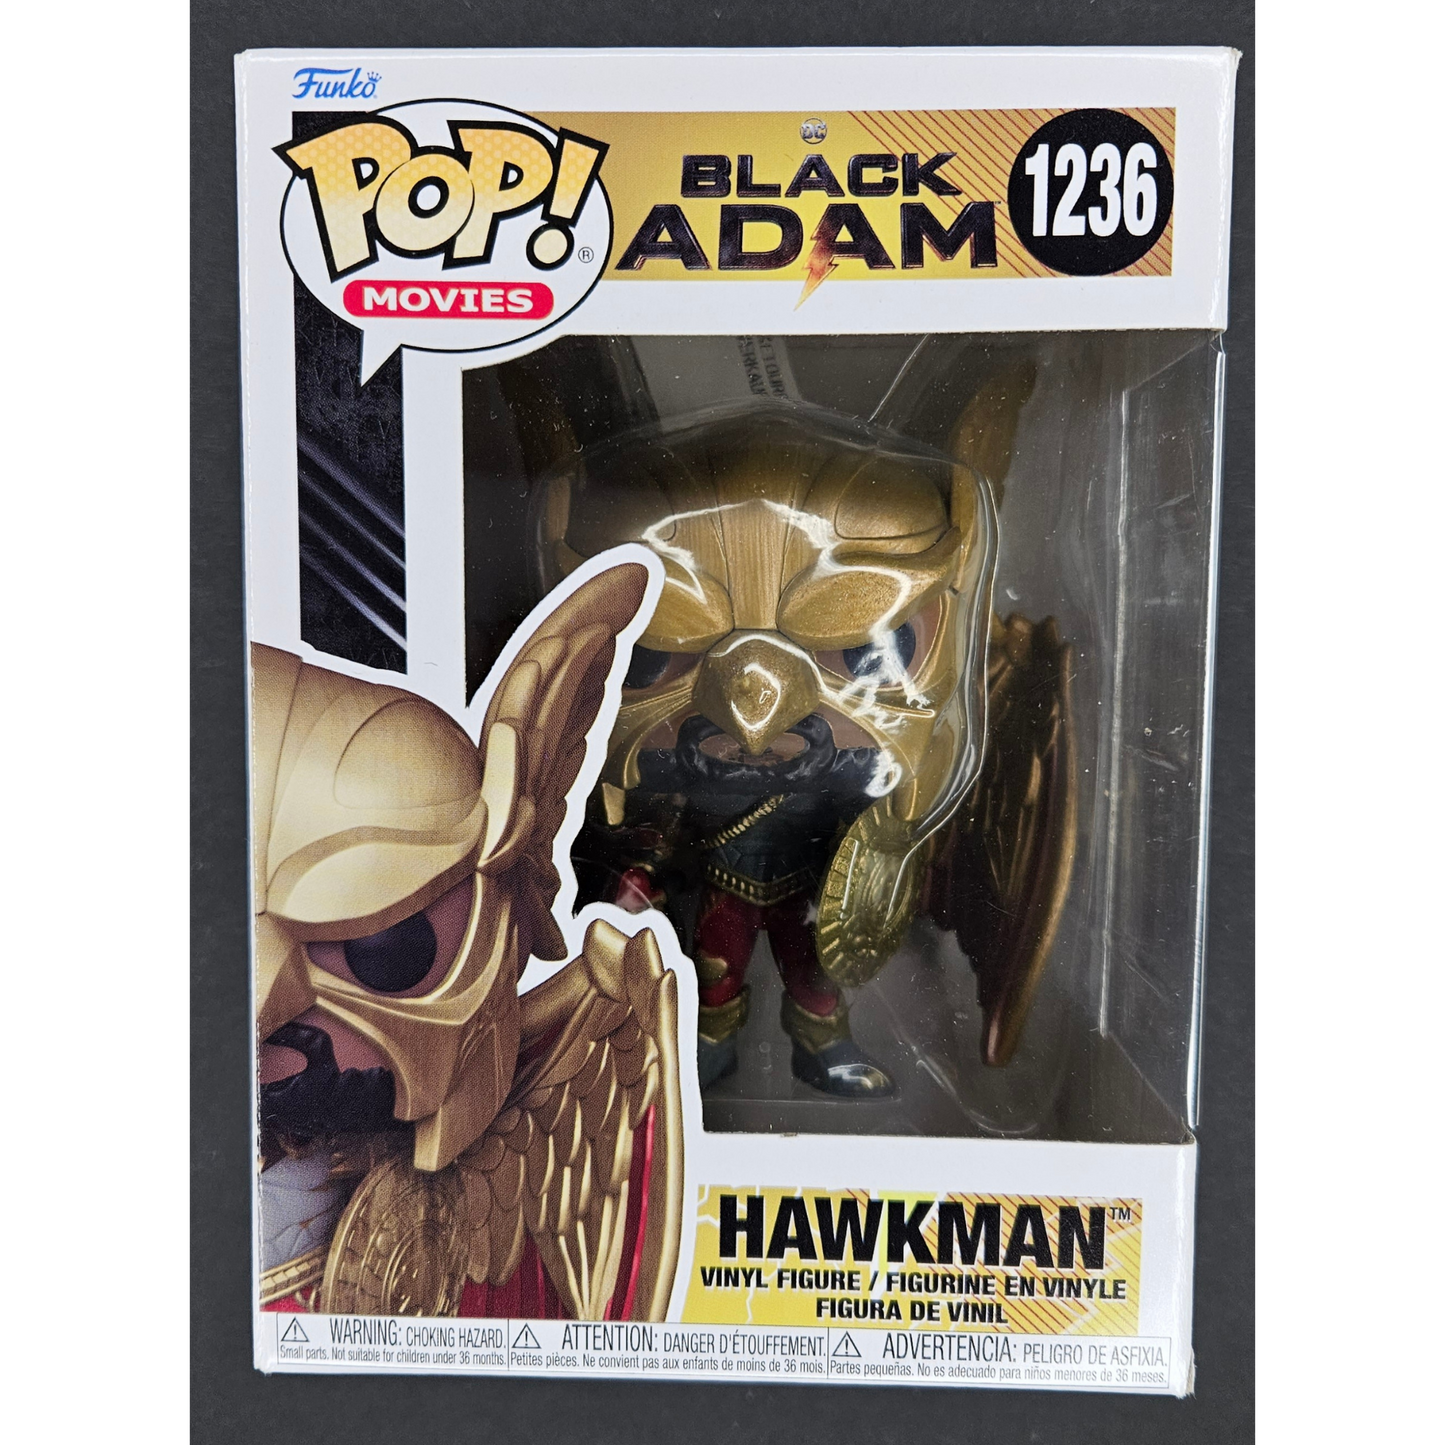 Hawkman Funko Pop! Black Adam #1236